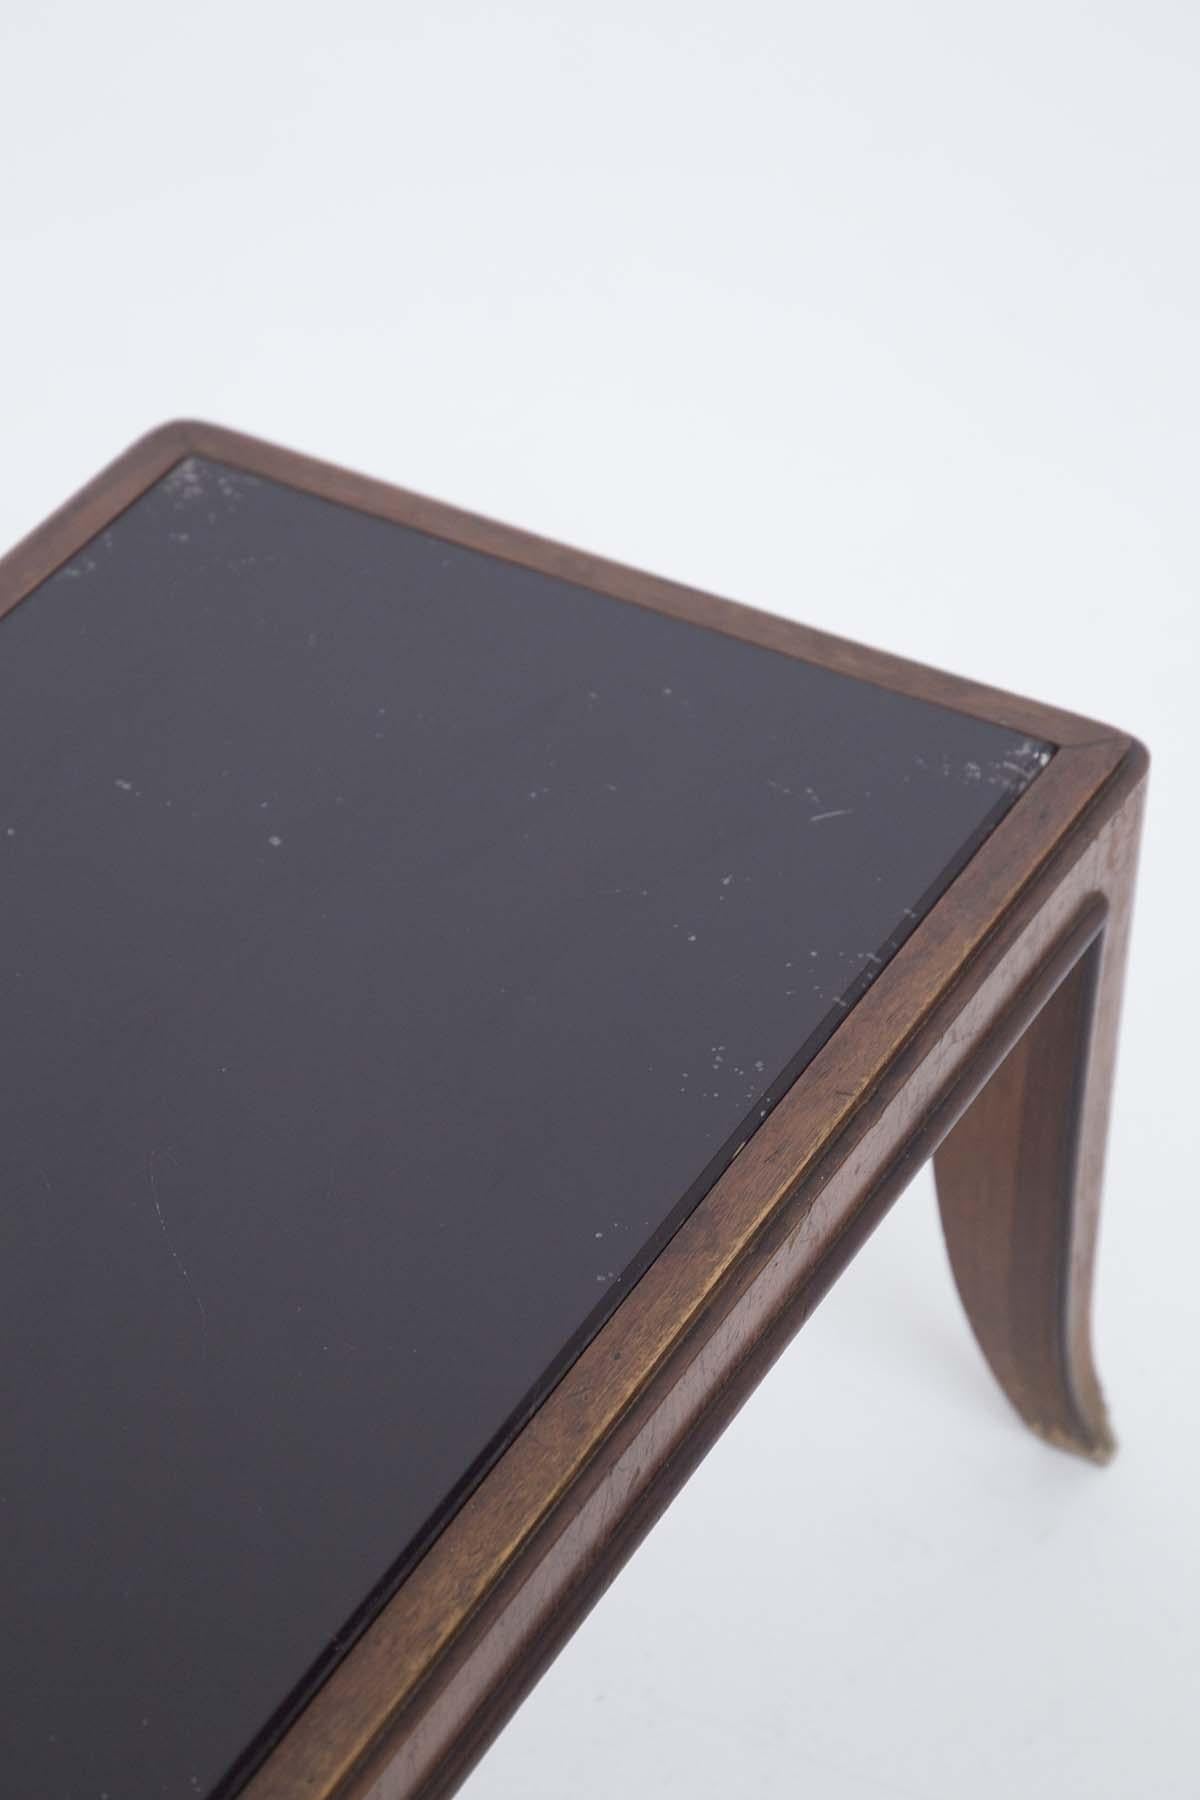 Niedriger Couchtisch, der Gio Ponti zugeschrieben wird, entworfen in den 1950er Jahren. Der niedrige Tisch hat eine vollkommen intakte dunkle Glasplatte. Der Rahmen ist aus sehr starkem Holz gefertigt. Die Struktur des Tisches ist von gut